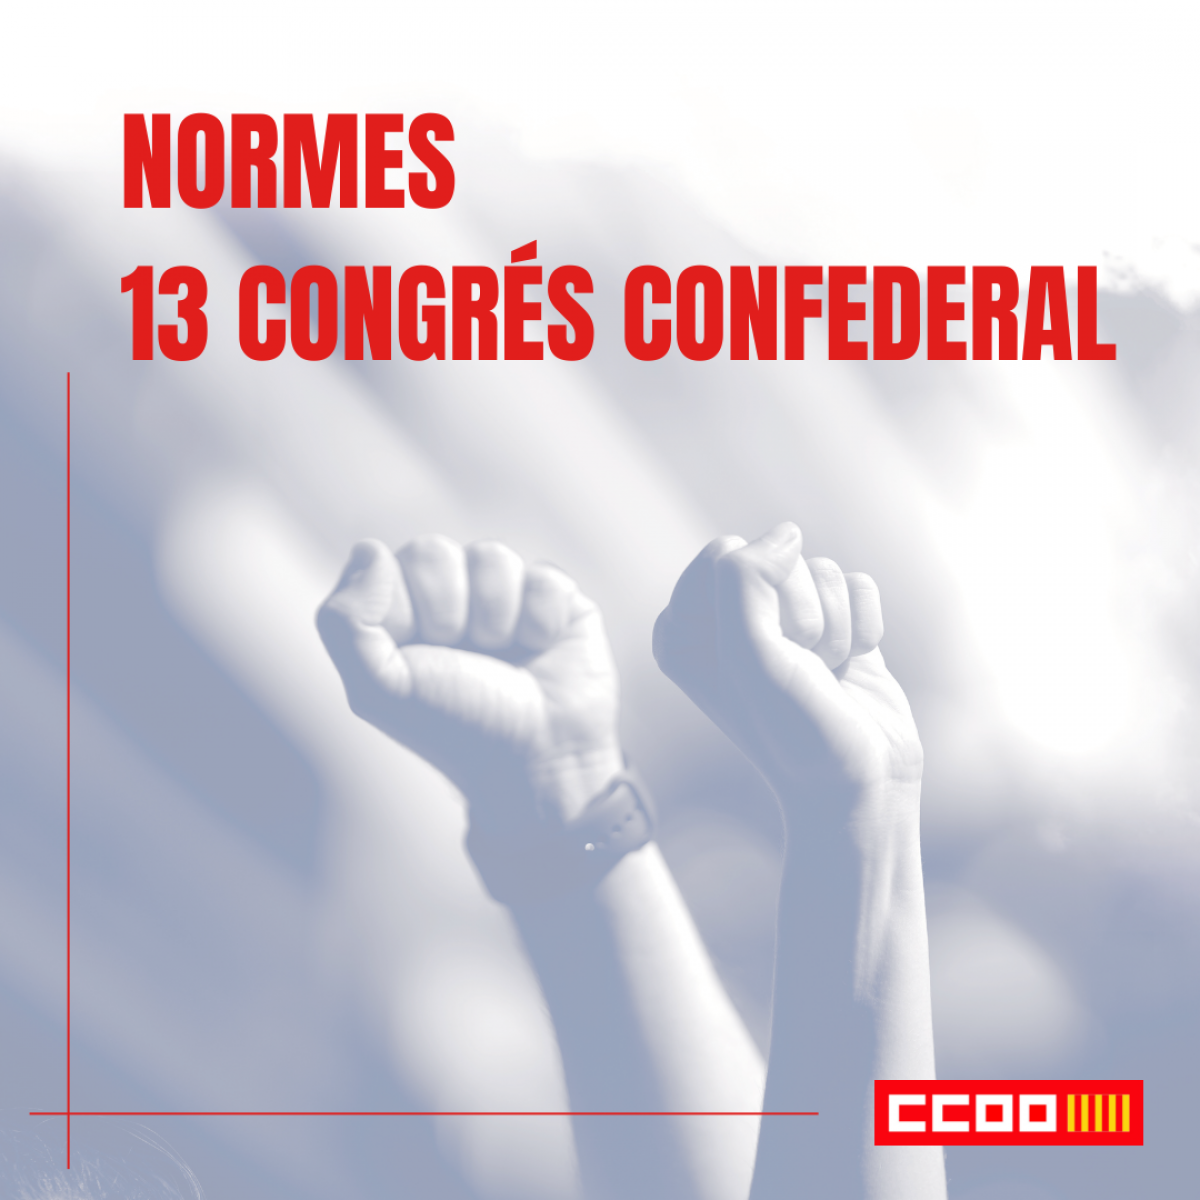 Normes XIII Congrs confederal CCOO PV